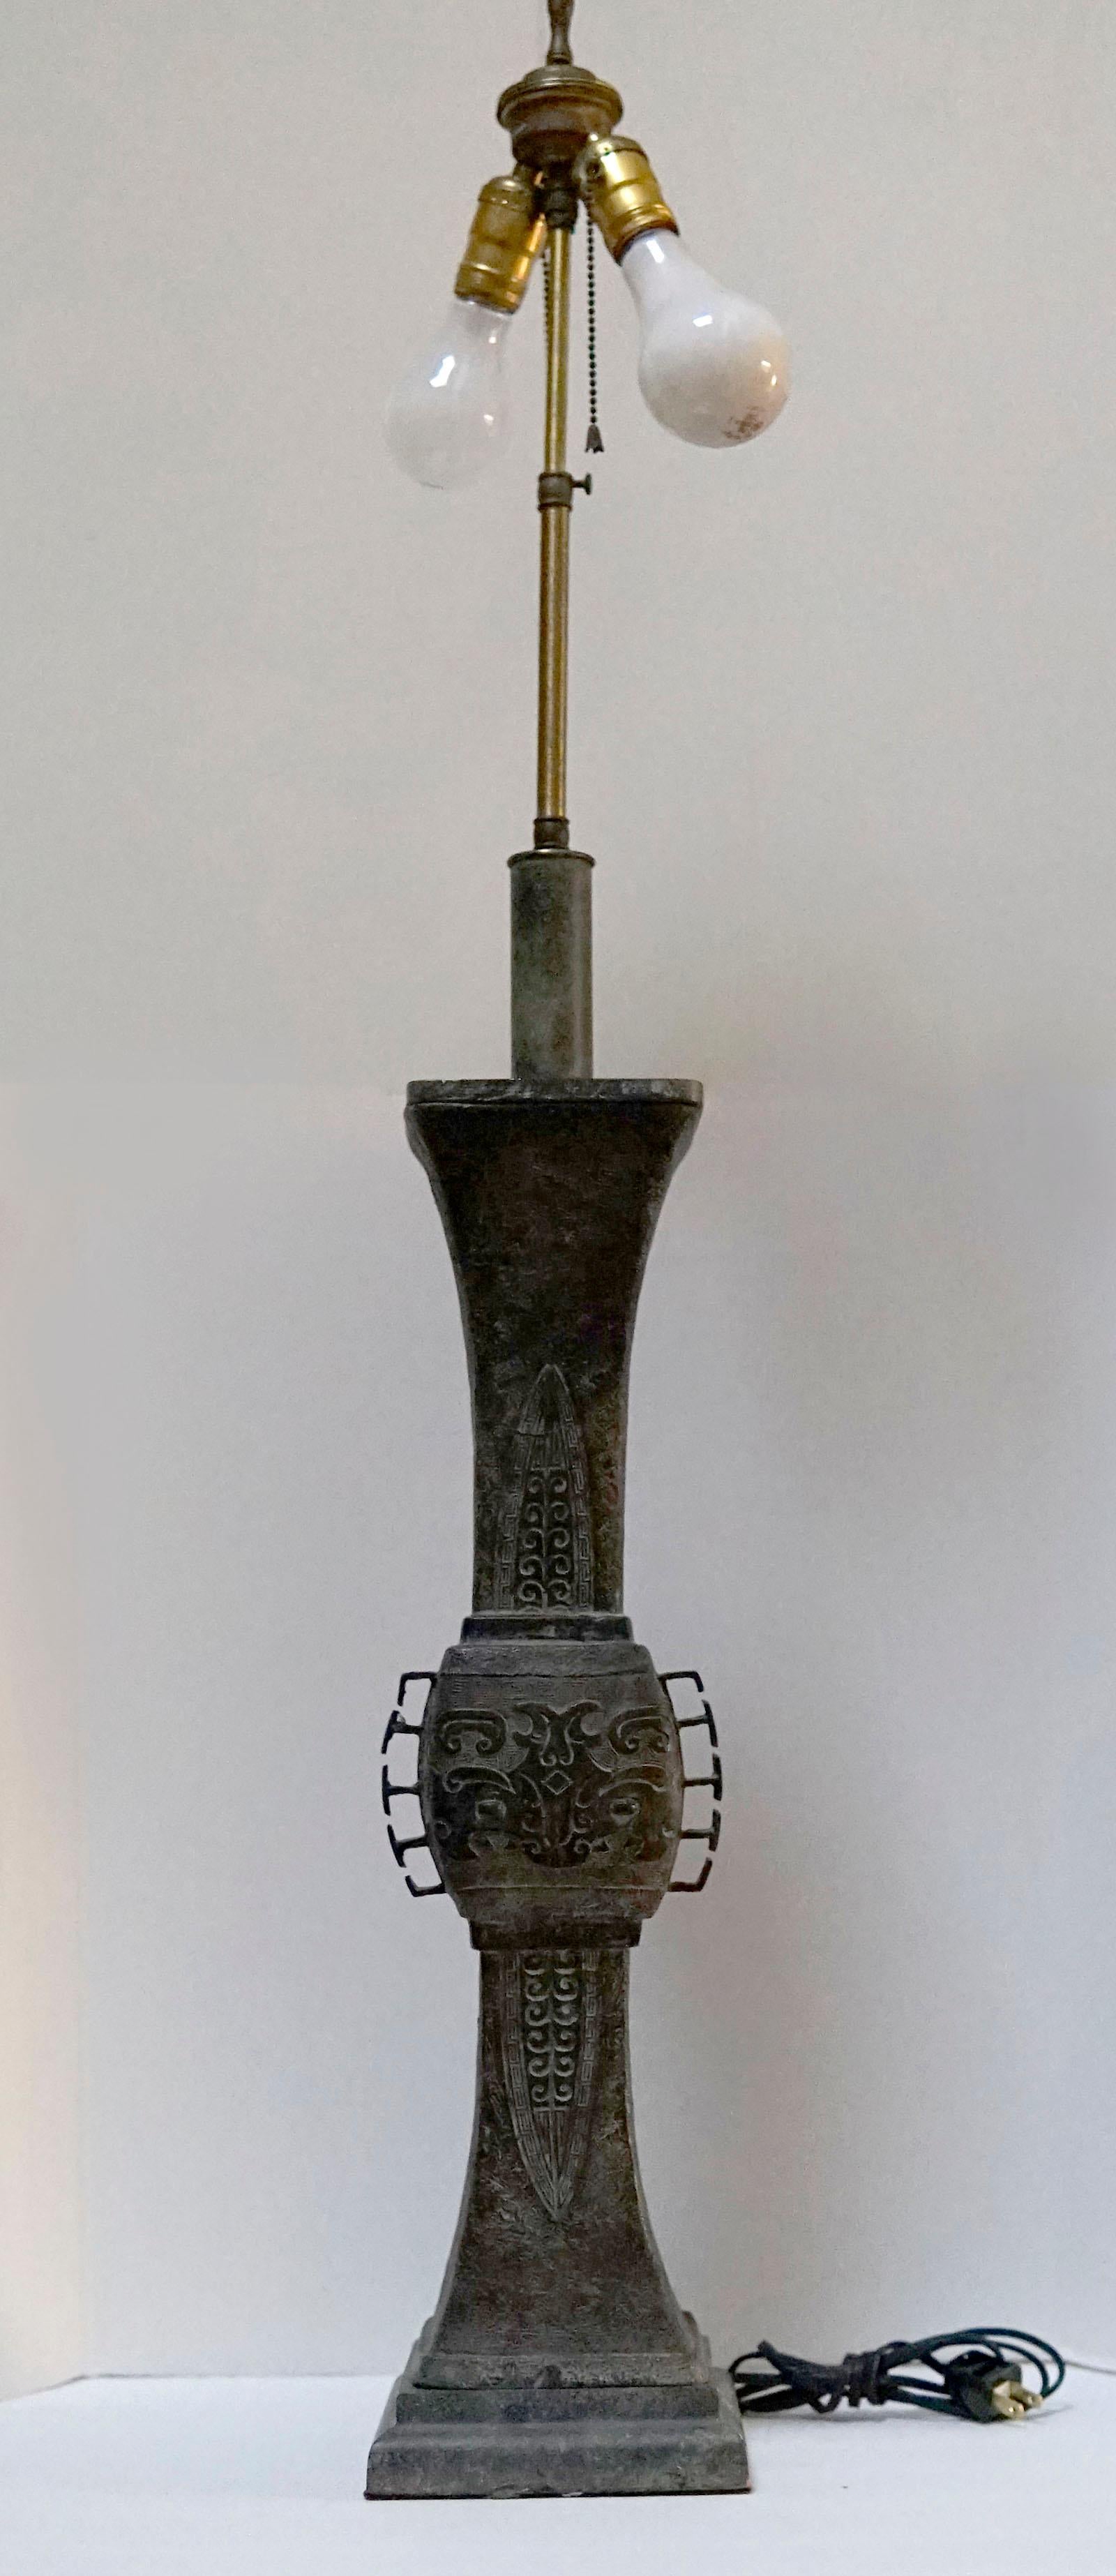 La silhouette atténuée de cette lampe de table en bronze de la fin du XIXe siècle fait tourner les têtes. Il s'agit d'un bronze antique de style archaïque asiatique. La sculpture complexe et la couleur bronze oxydée sont synonymes d'ancienneté et de